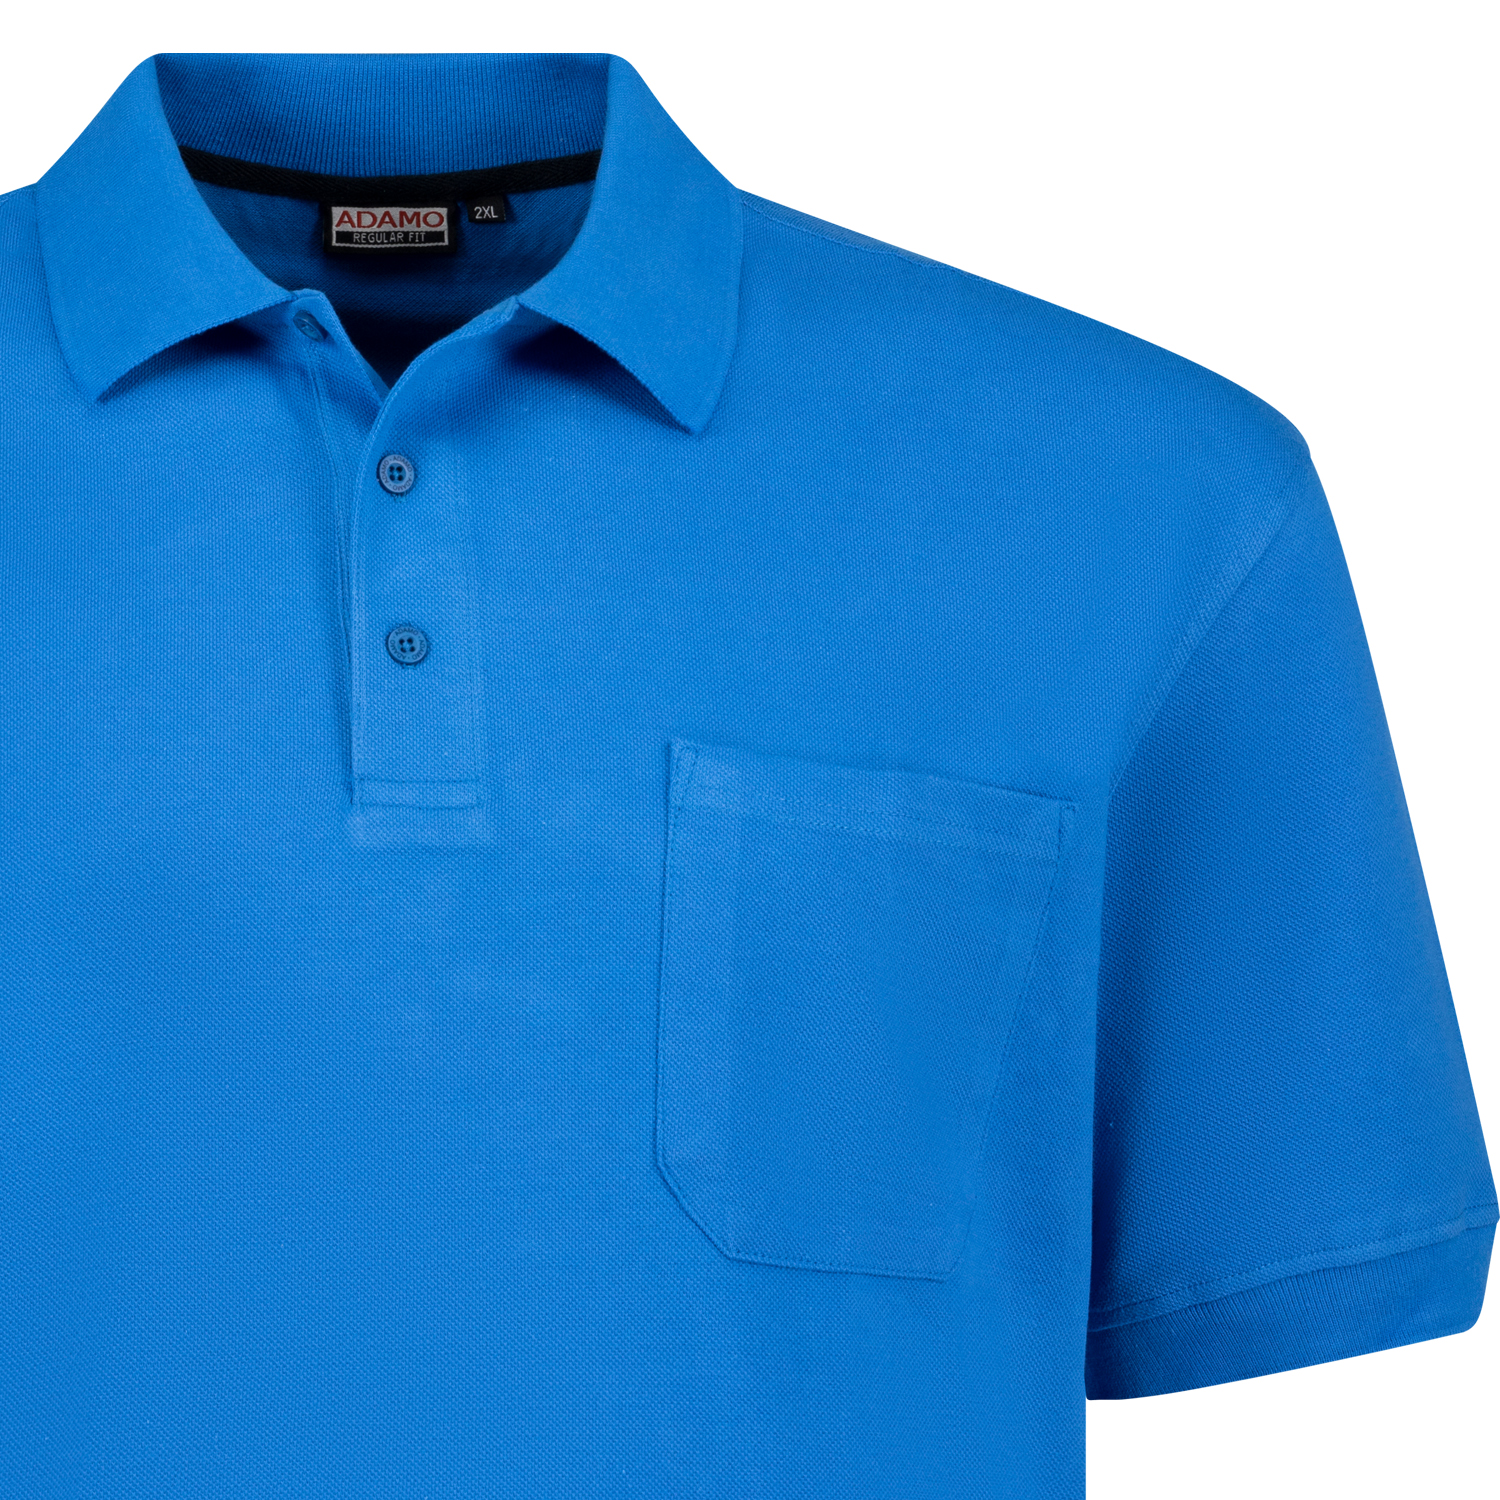 Herren Pique Poloshirt REGULAR FIT kurzarm Serie KENO von Adamo azurblau in Übergrößen 2XL - 10XL